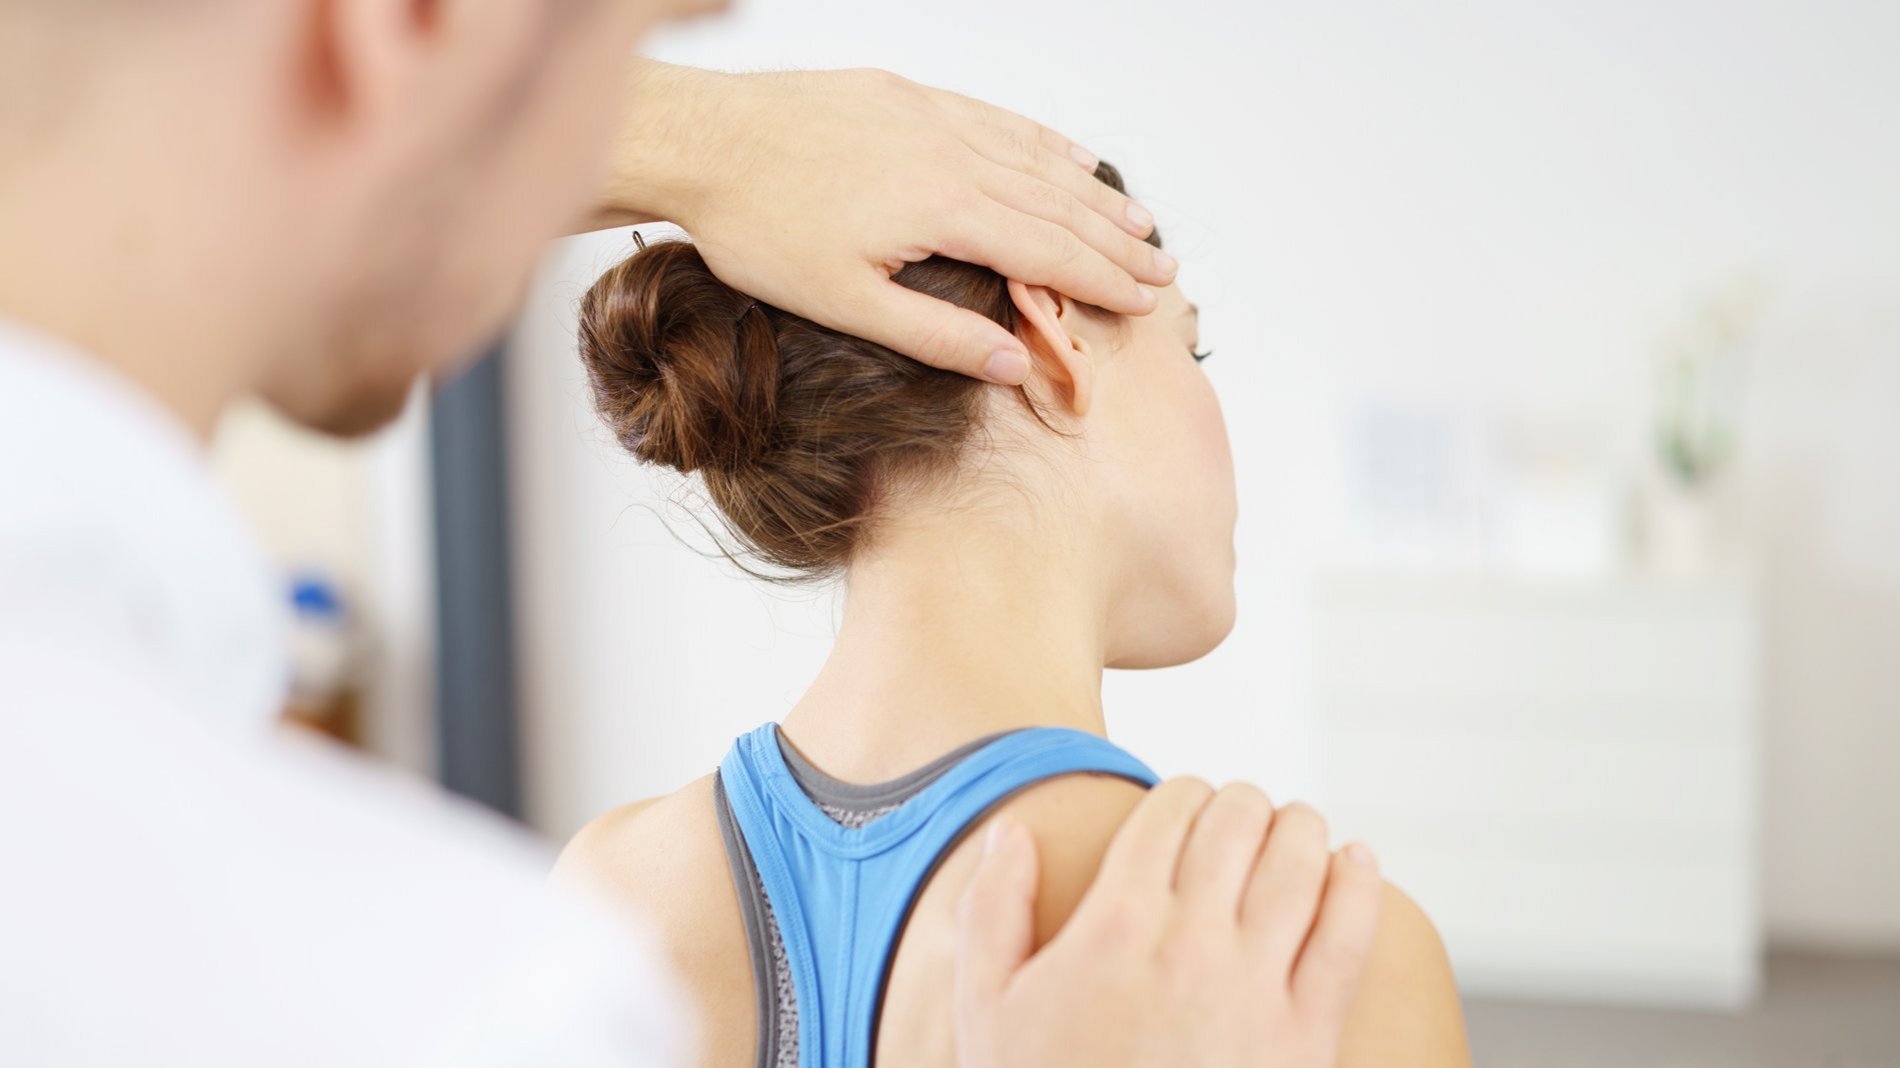 Physiotherapeut korrigiert den Nacken einer jungen Frau aufgrund einer Fehlstellung durch falsches Kissen